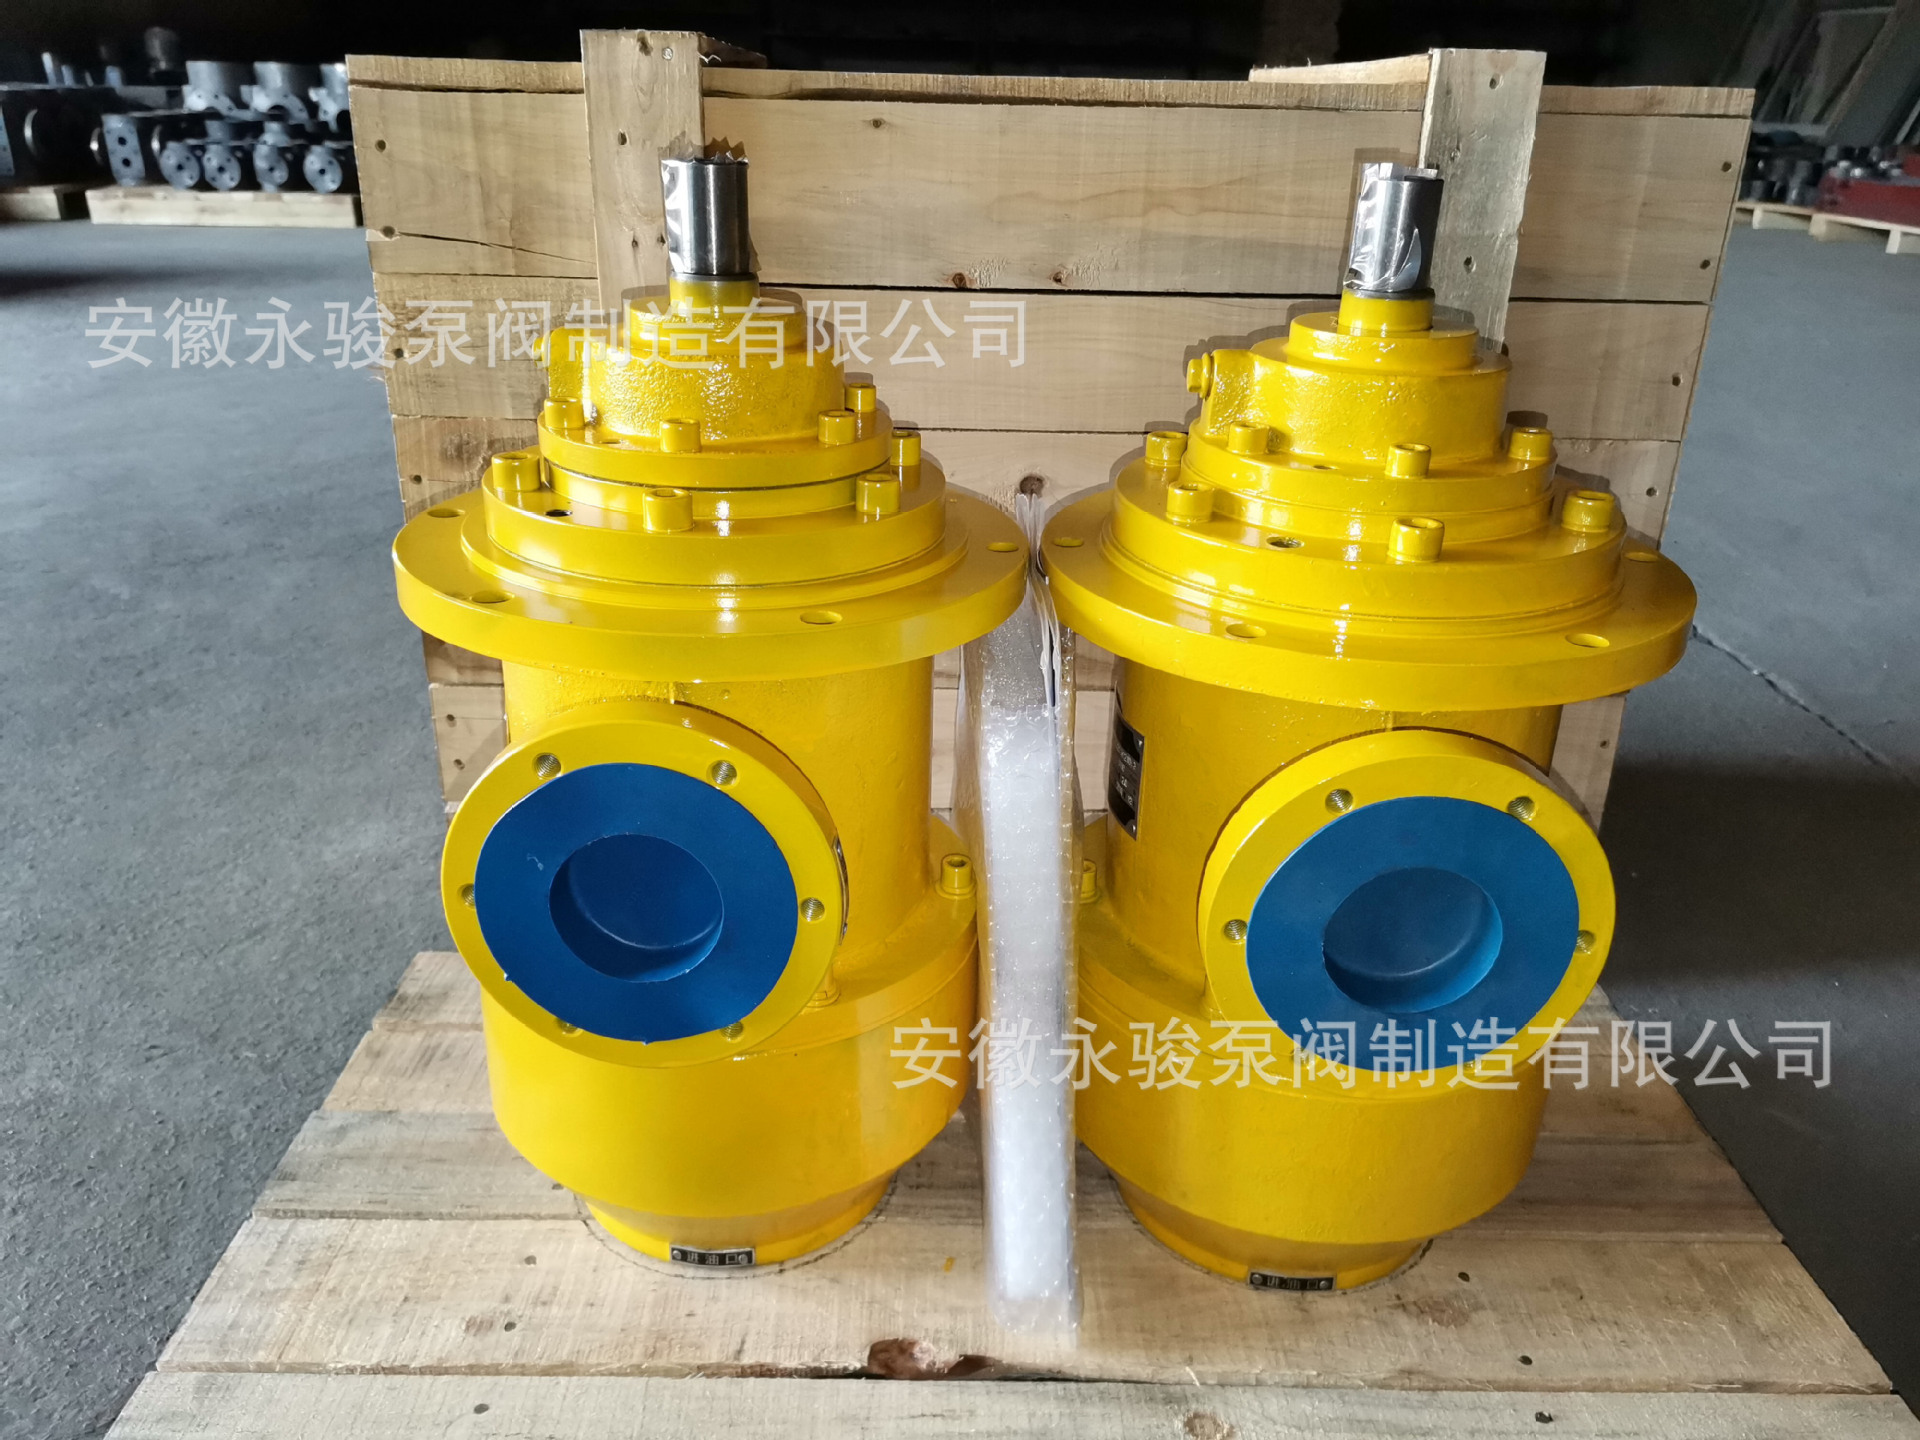 黄山螺杆泵 HSJ120-46 浸没式三螺杆泵 液压站稀油润滑泵安徽永骏